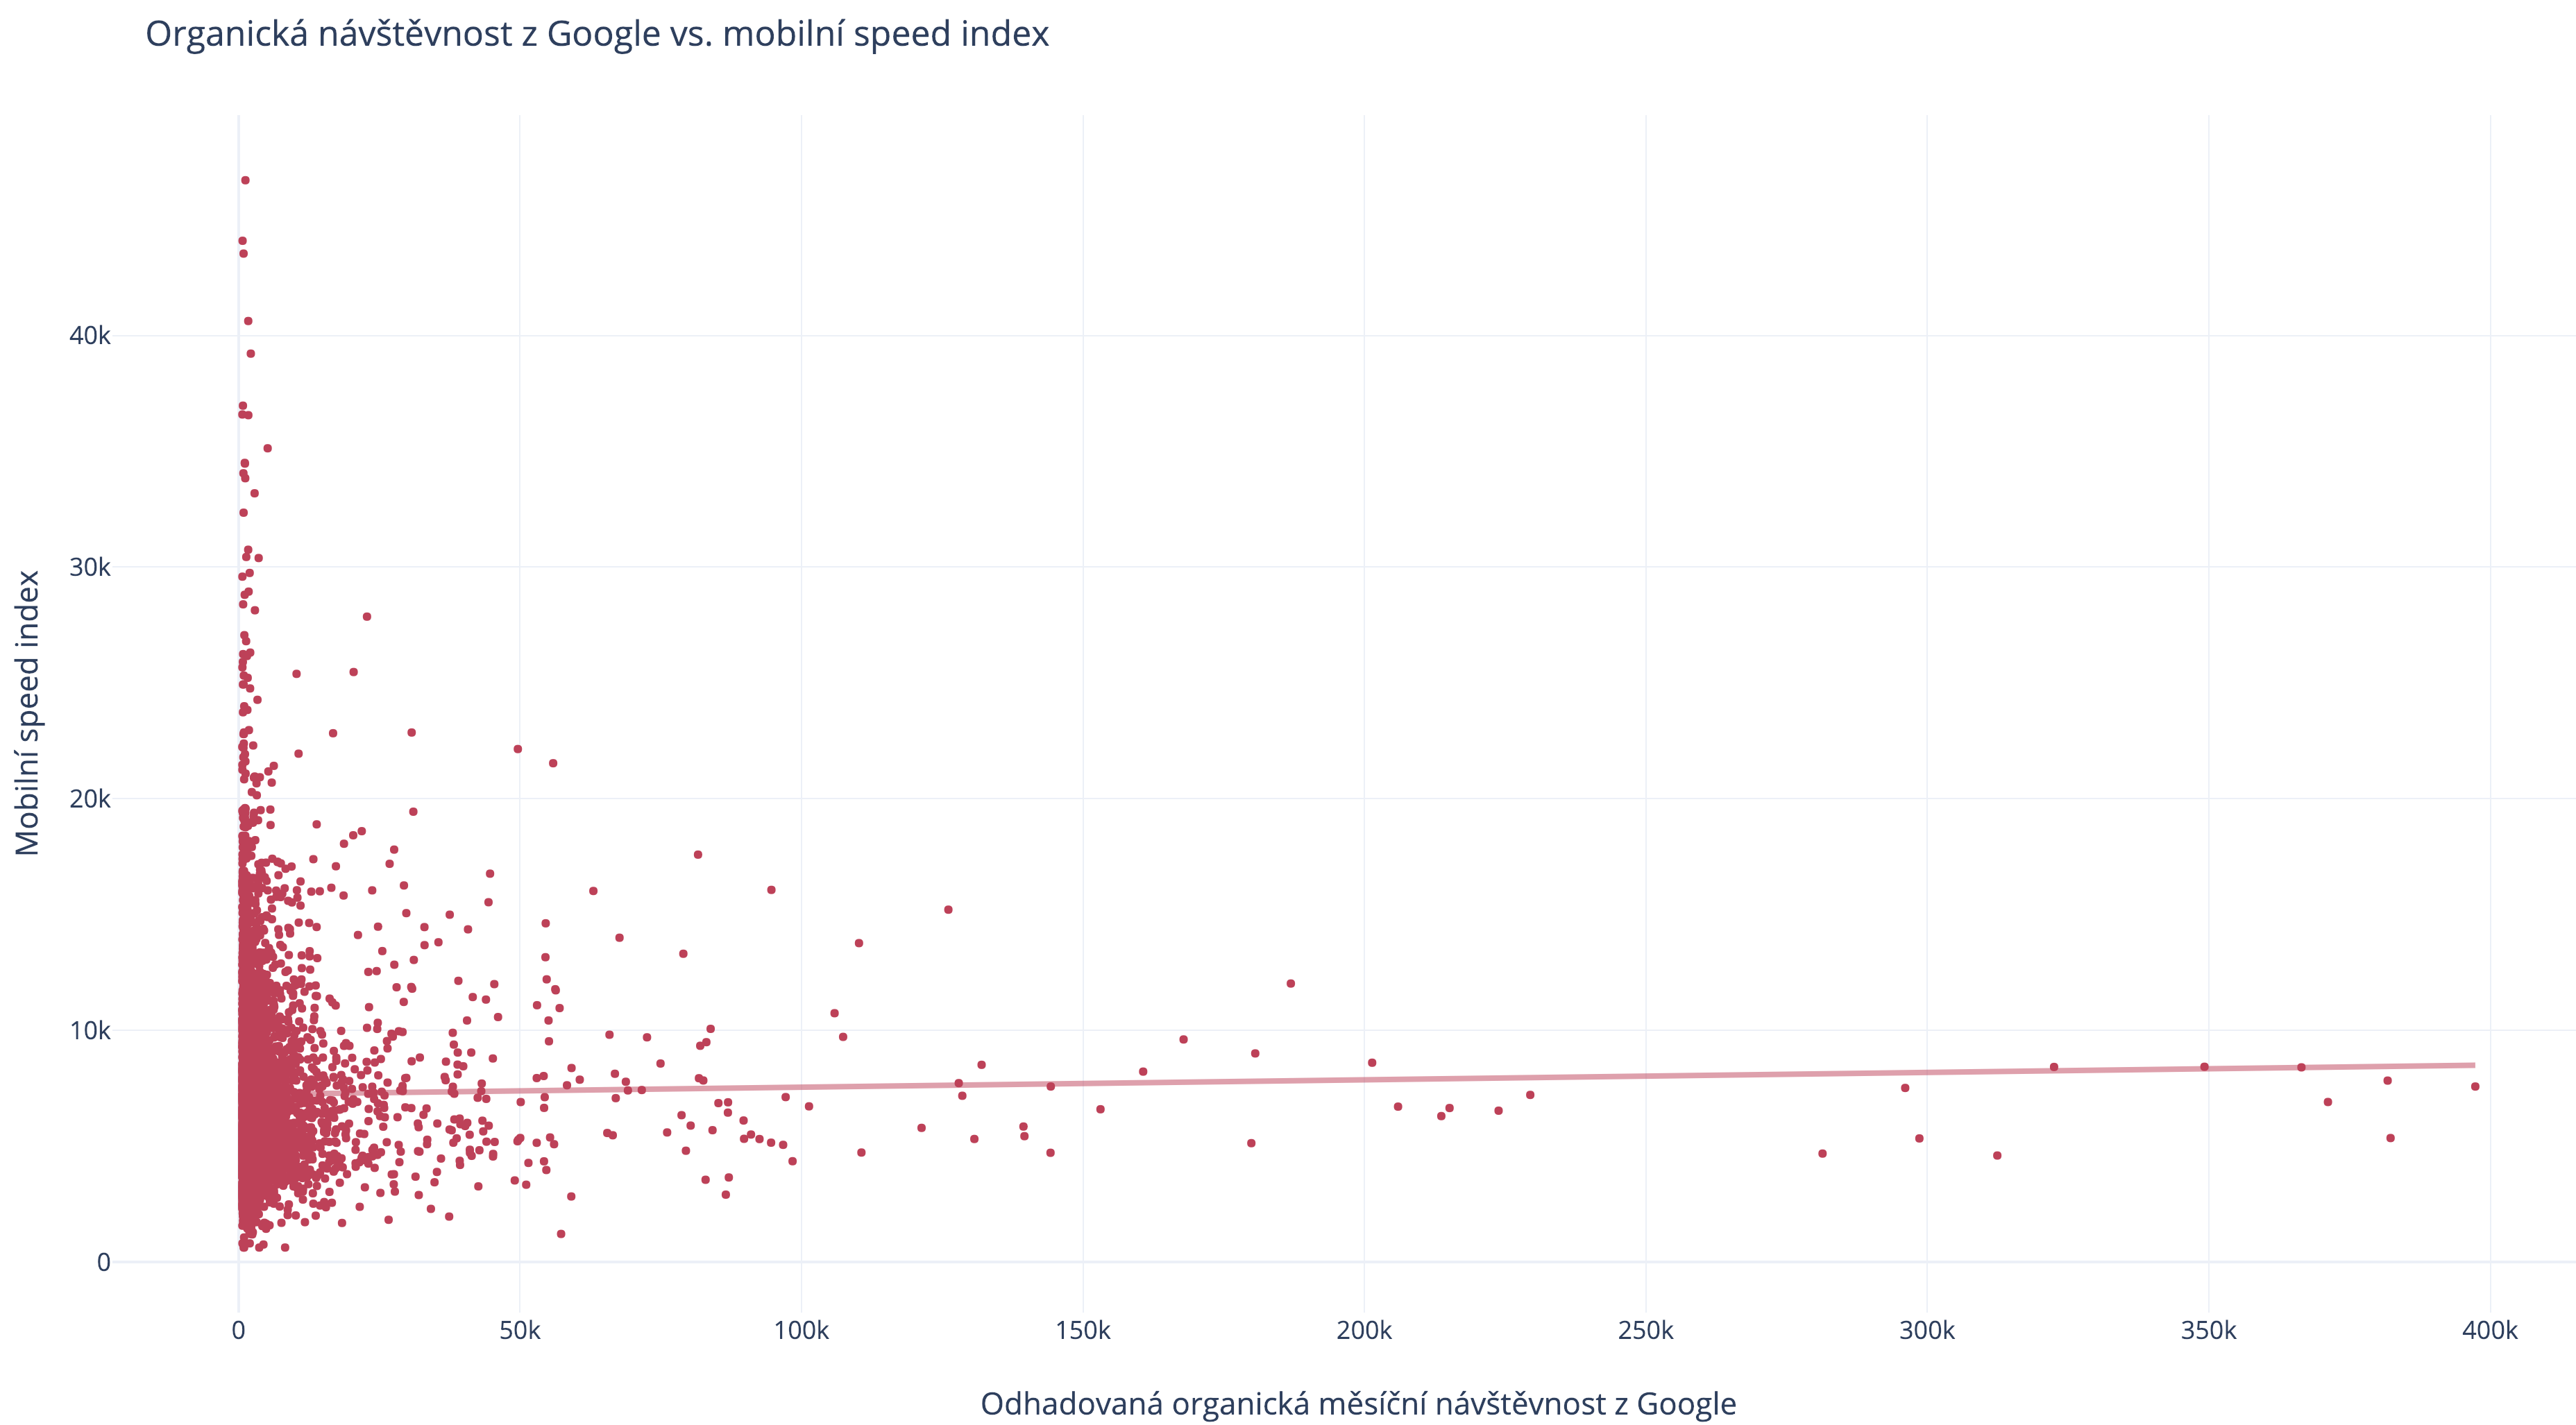 Organická návštěvnost z Google vs. mobilní speed index